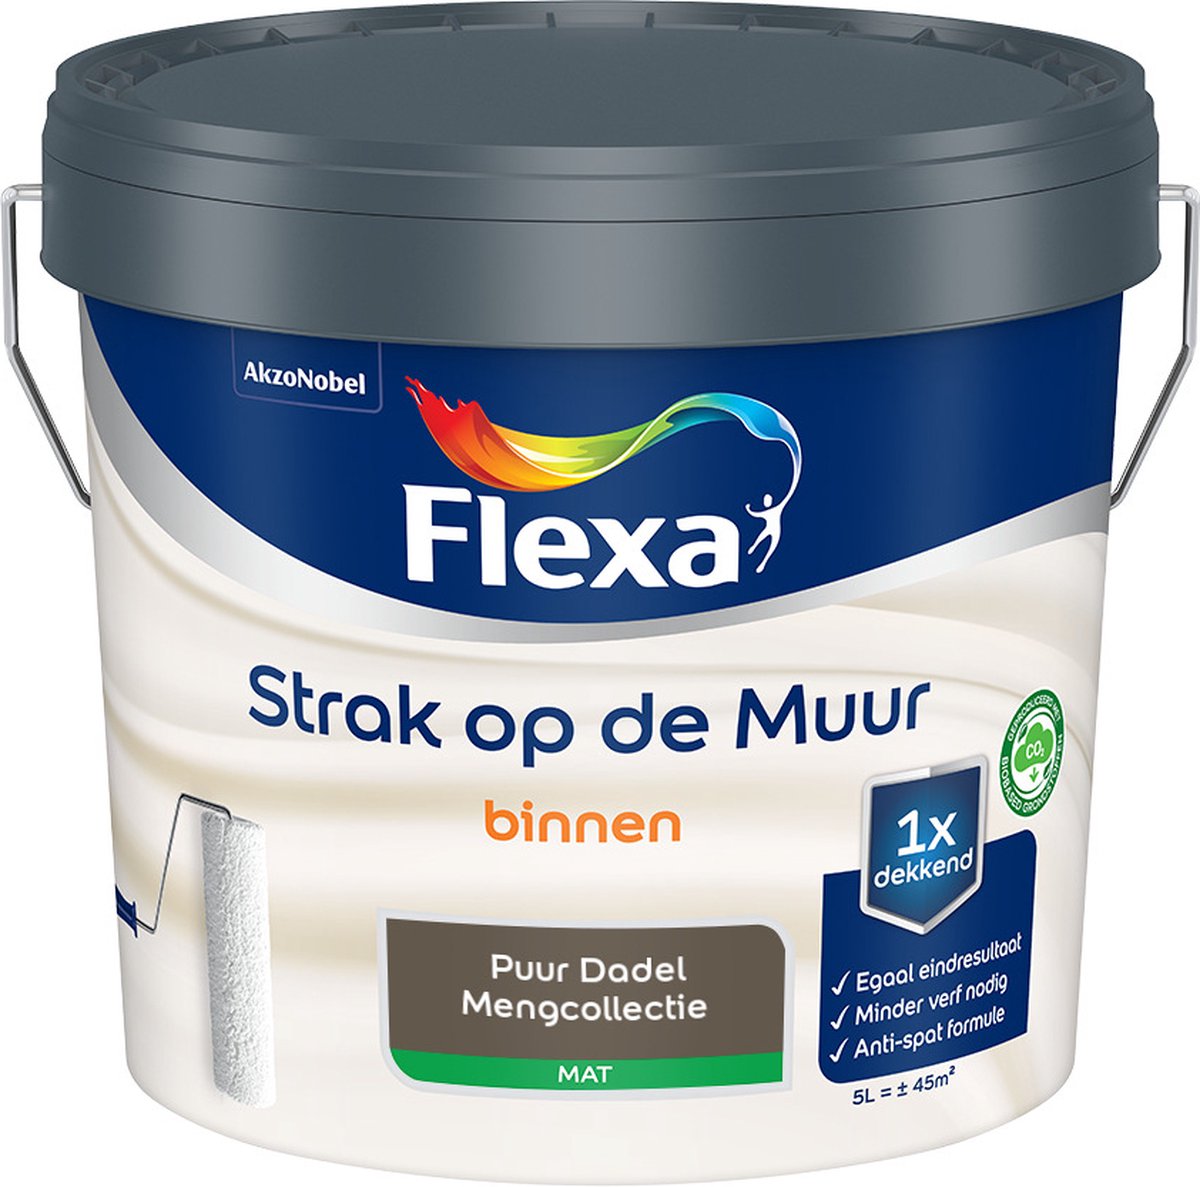 Flexa Strak op de muur - Muurverf - Mengcollectie - Puur Dadel - 5 Liter